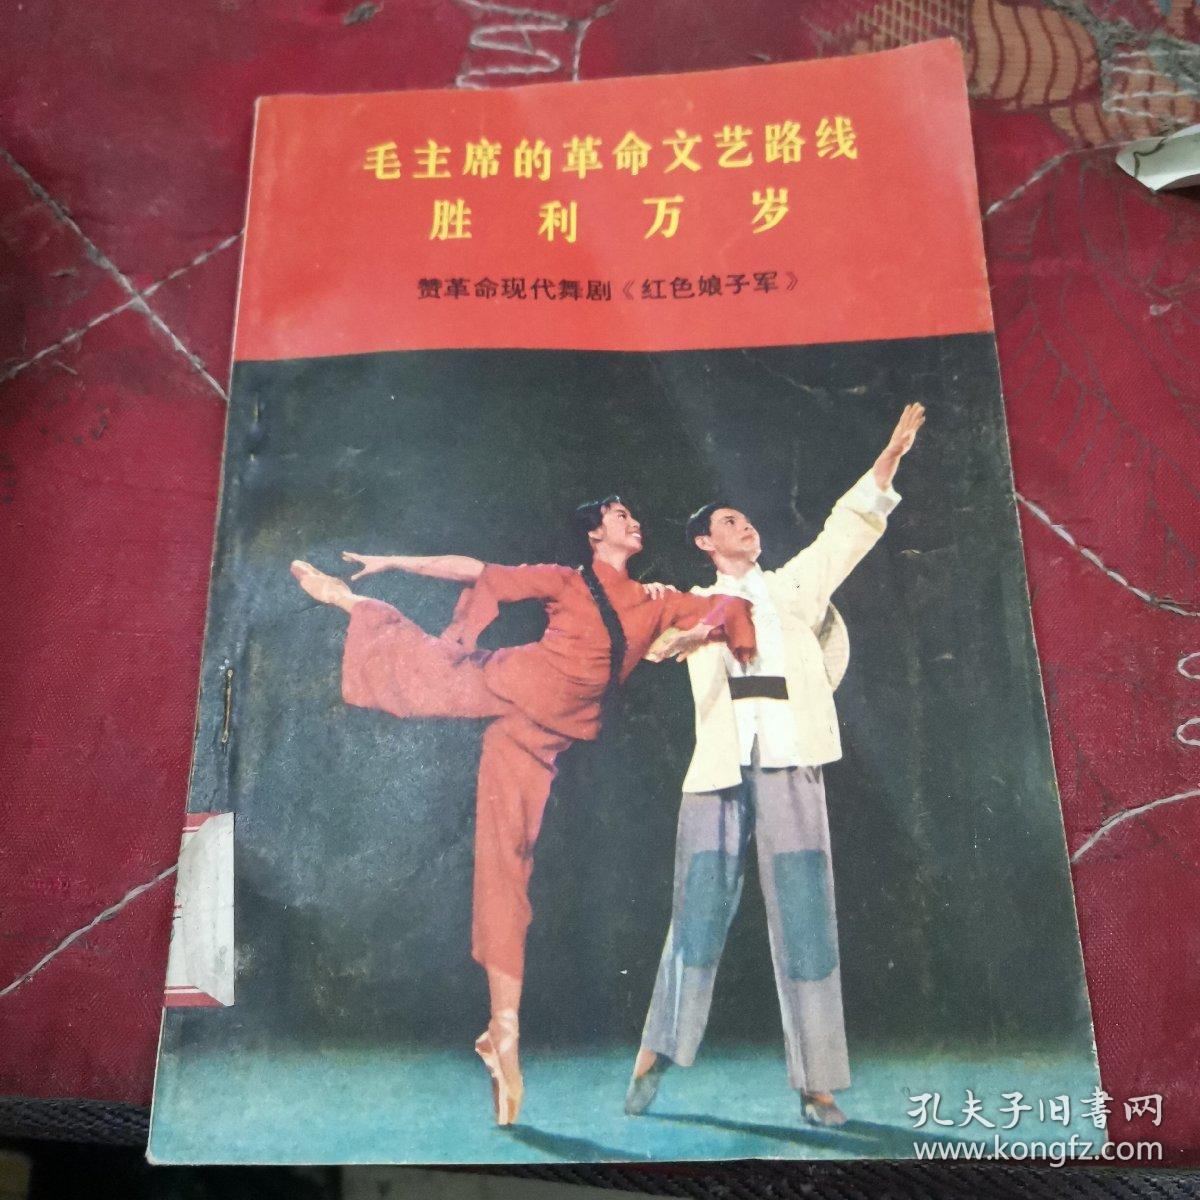 毛主席的革命文艺路线胜利万岁
赞革命现代舞剧《红色娘子军》